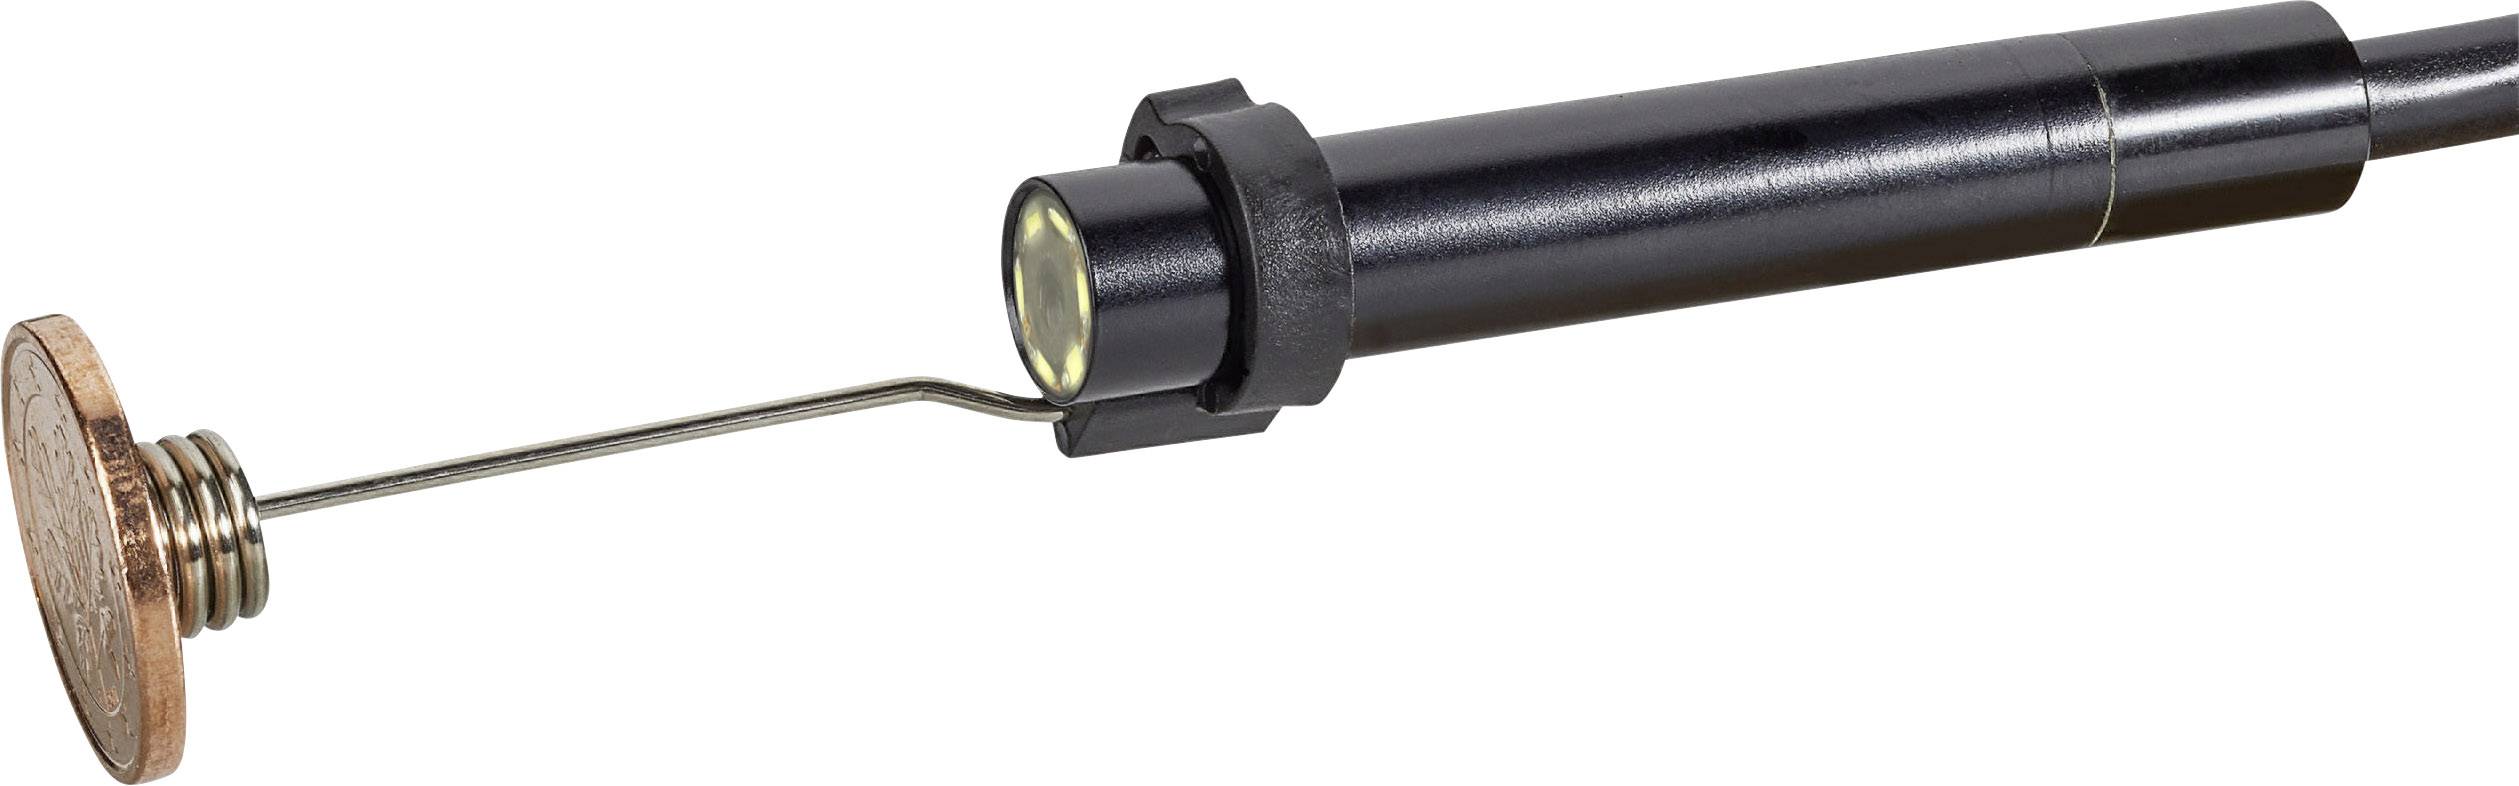 Video-Funktion 8 mm Sonden-Länge LED-Beleuchtung VOLTCRAFT VC-8919590 USB-Endoskop Sonden-Ø 9.85 m Bild-Funktion